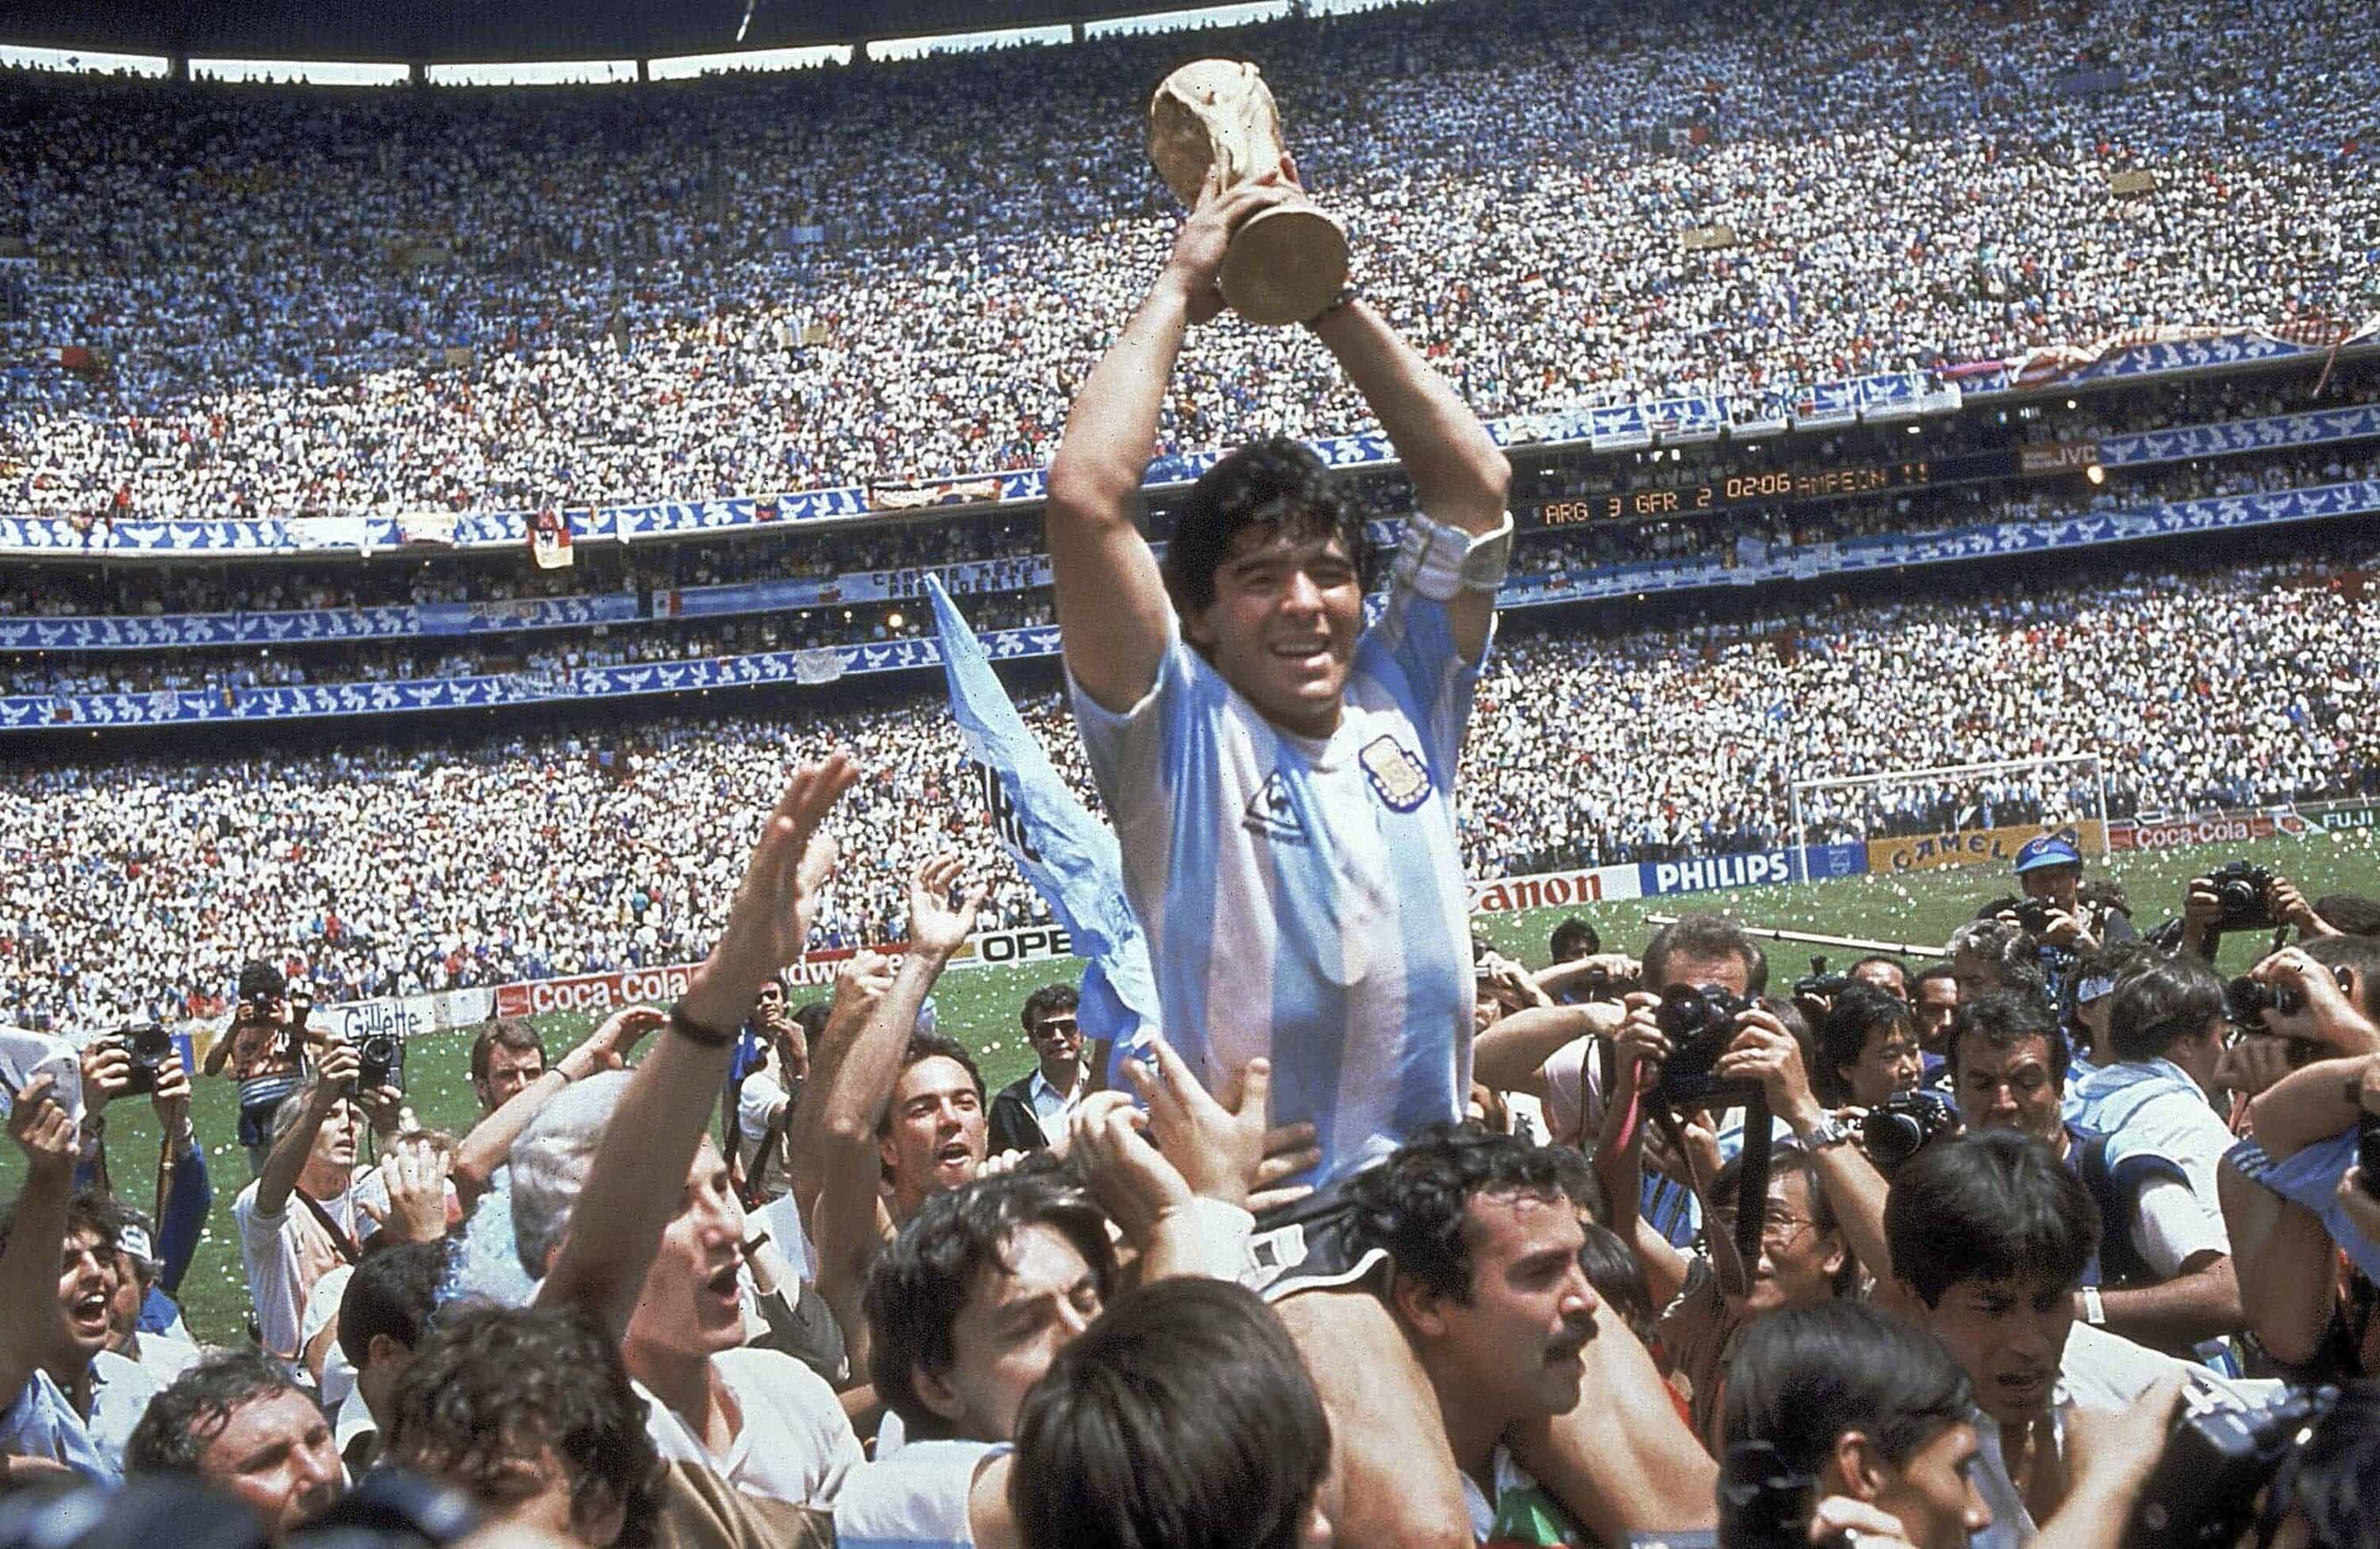 Diego Maradona, sostiene el trofeo, después de que Argentina venciera a Alemania Occidental 3-2 en el partido final de la Copa Mundial de fútbol,  en el Estadio Atzeca, en la Ciudad de México el 29 de junio de 1986.